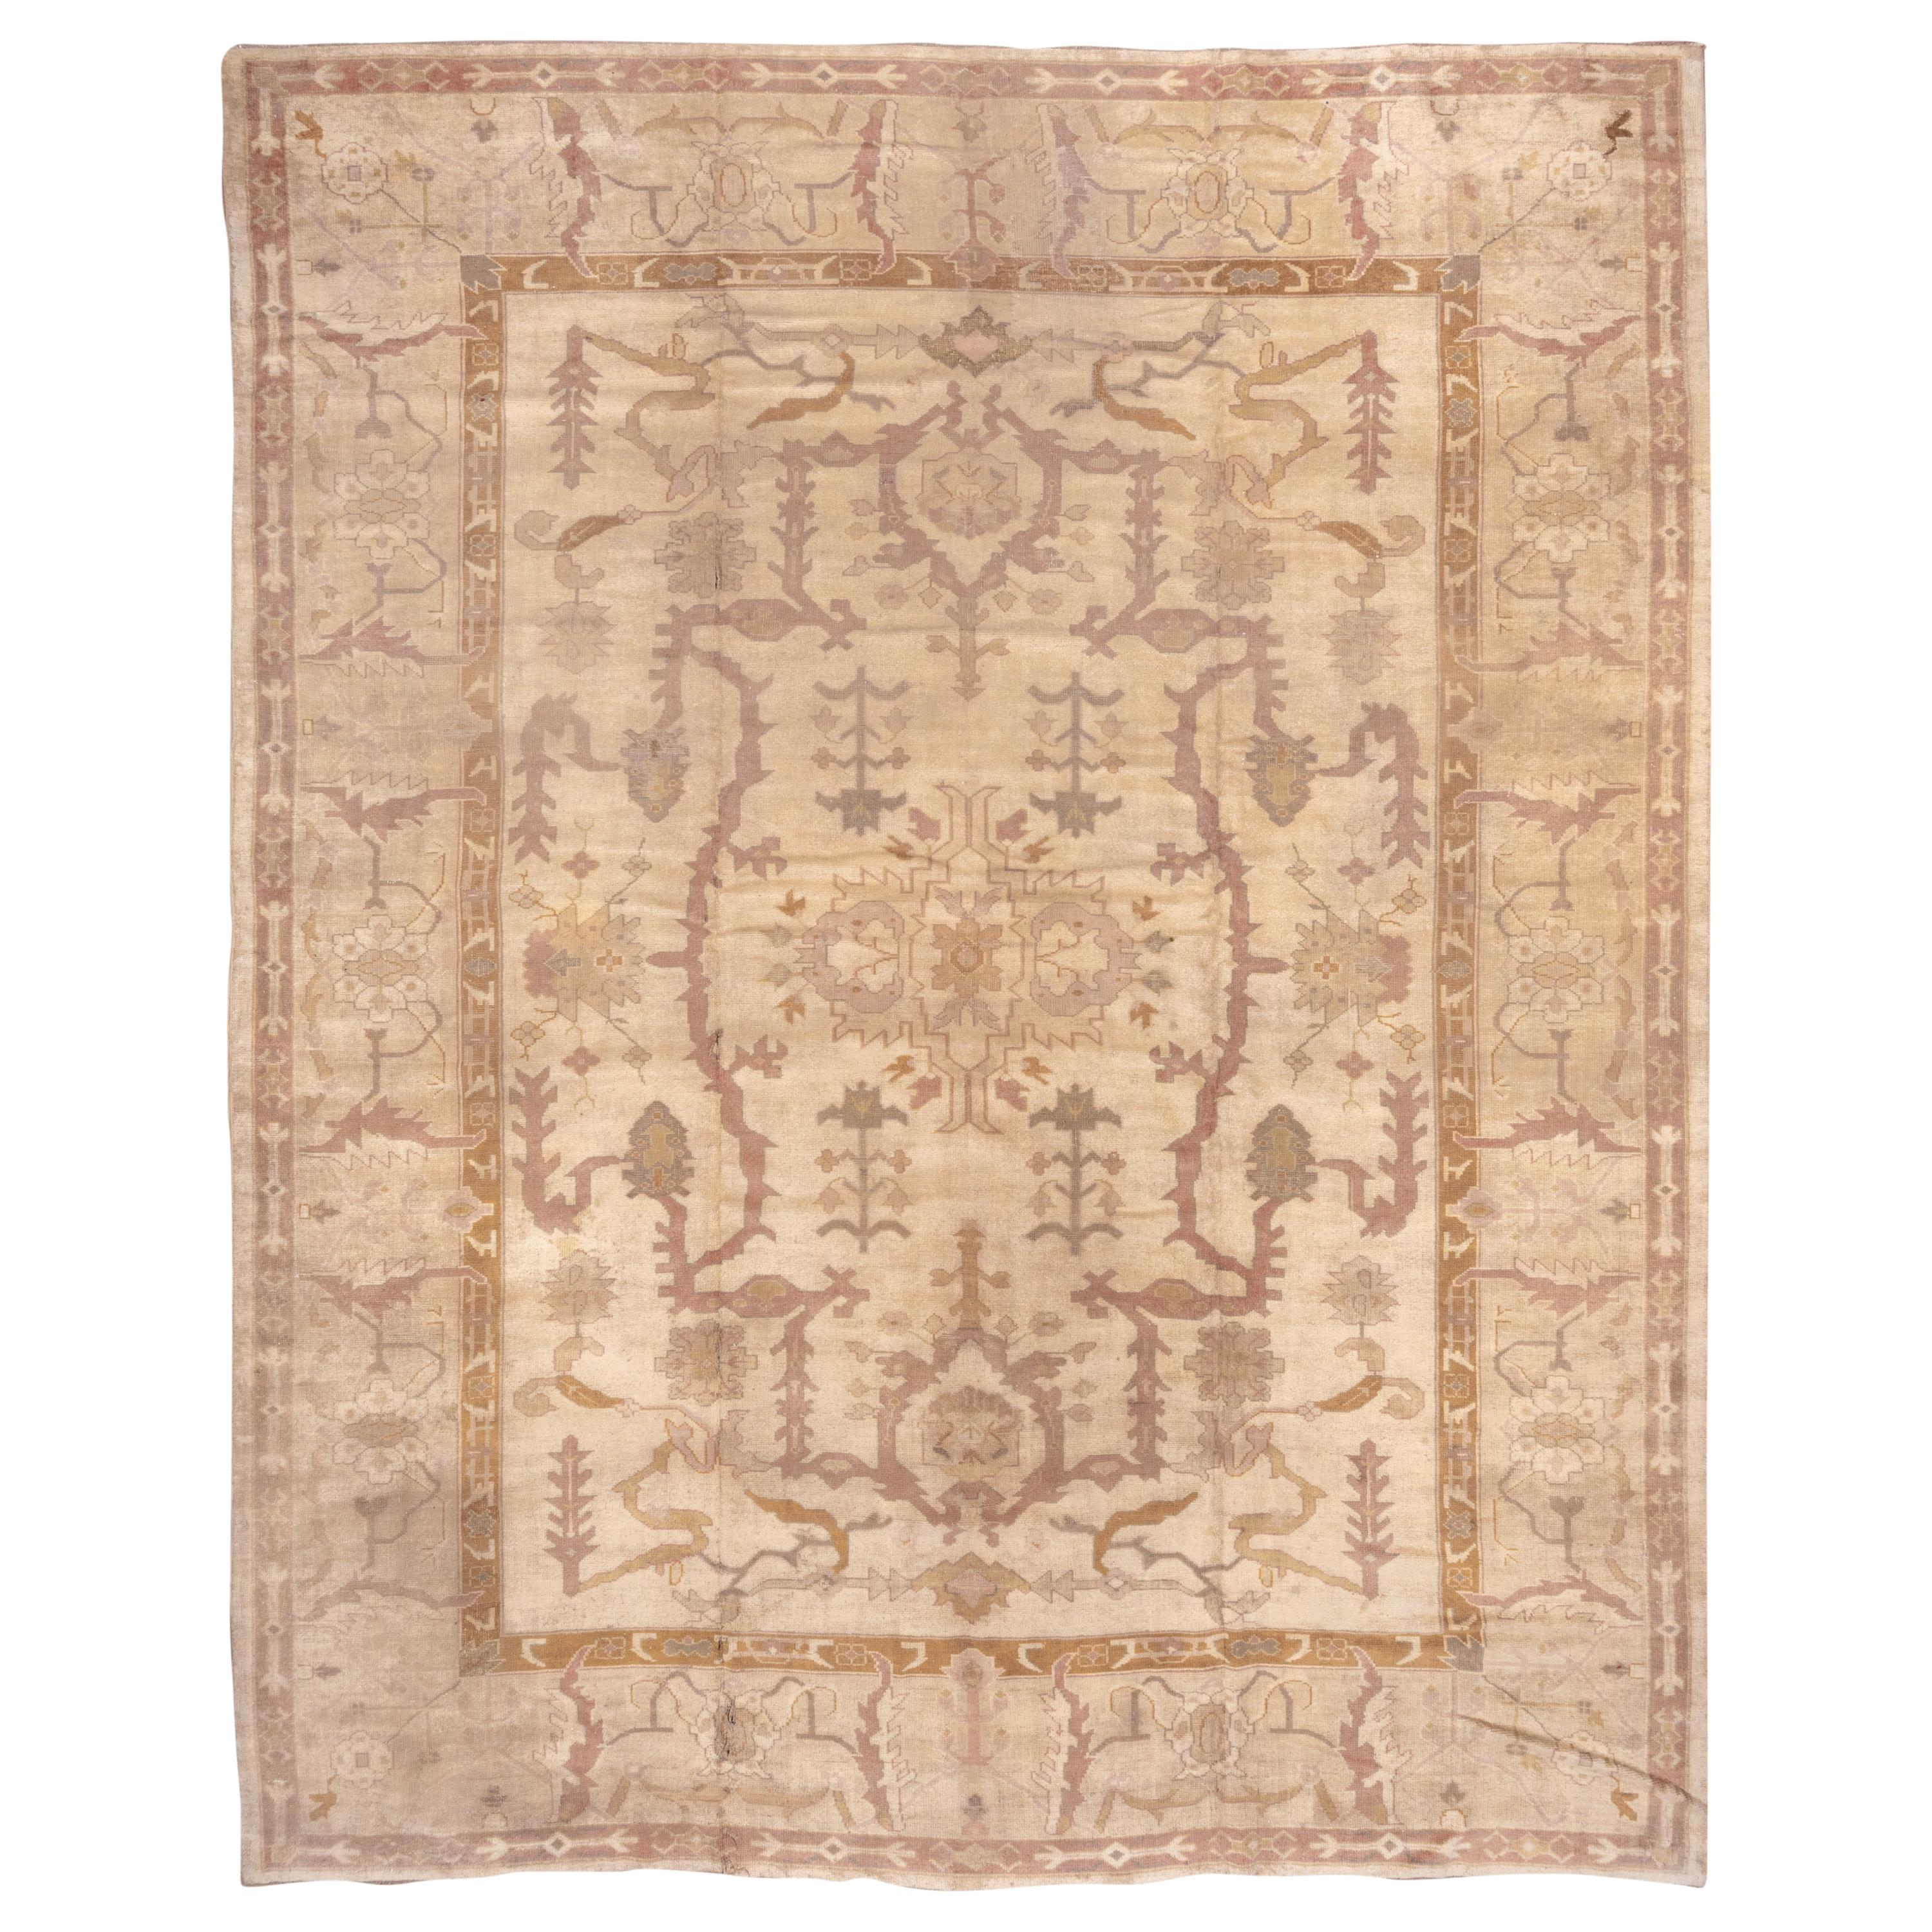 Antique Turkish Oushak Carpet, Soft Palette For Sale